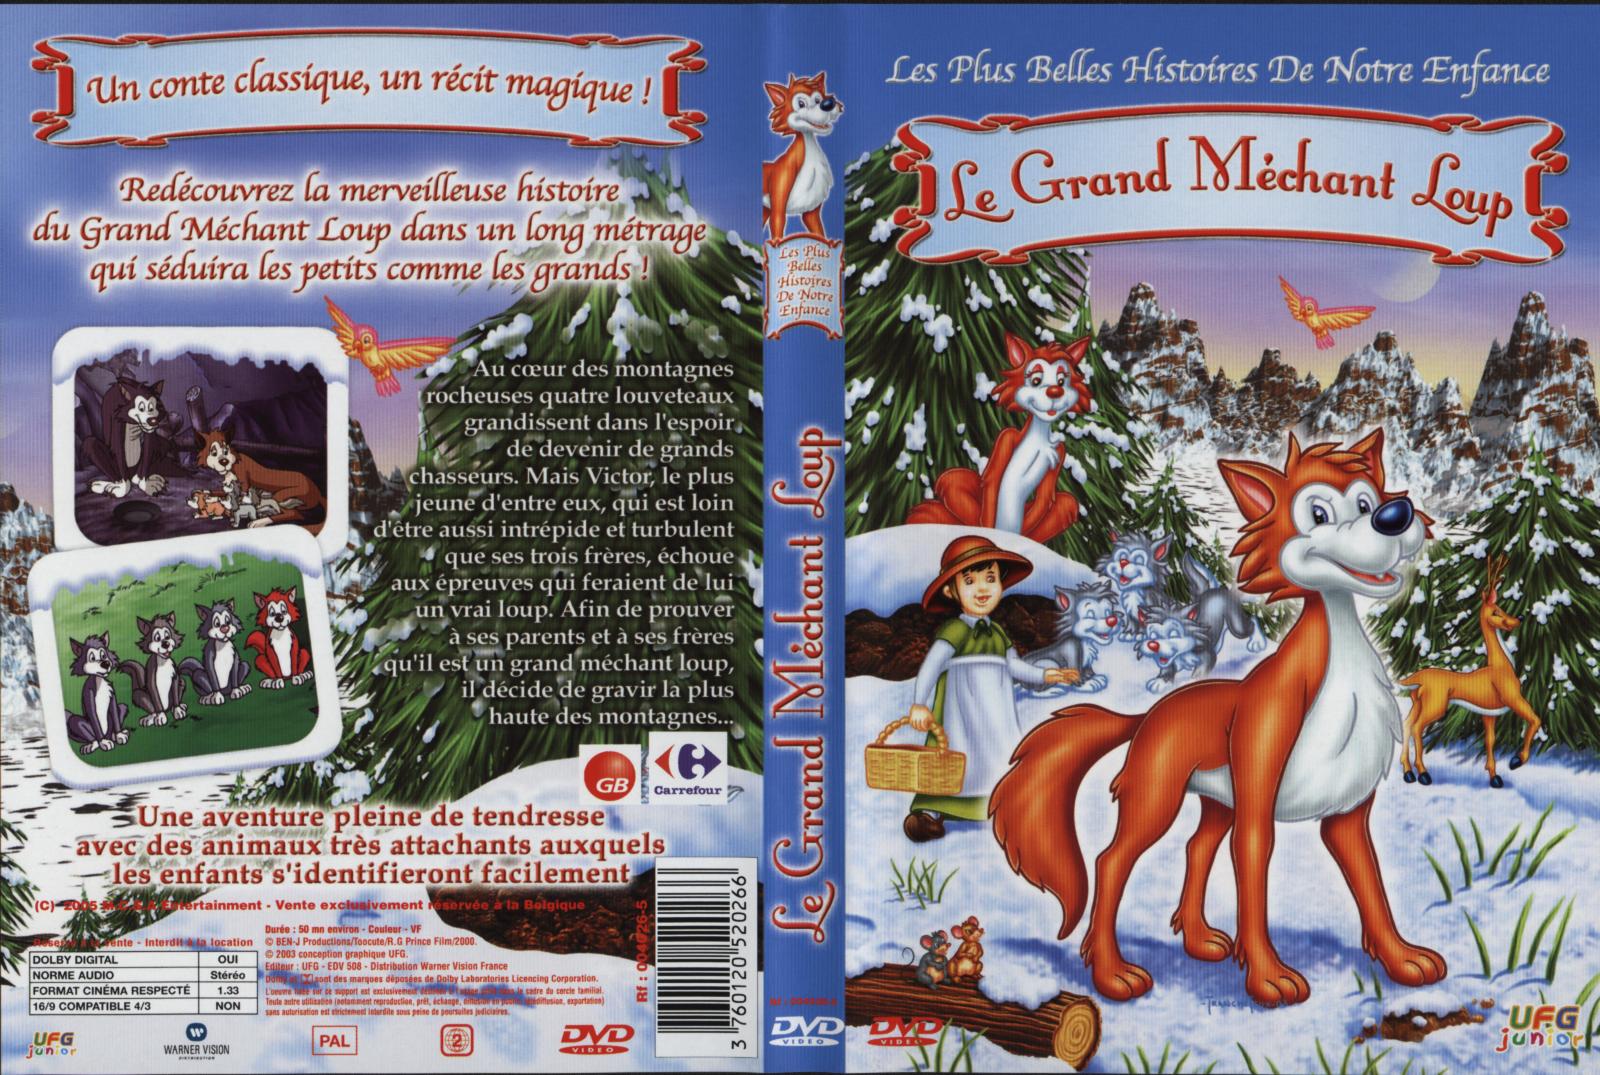 Jaquette DVD Les plus belles histoires de notre enfance - Le grand mchant loup